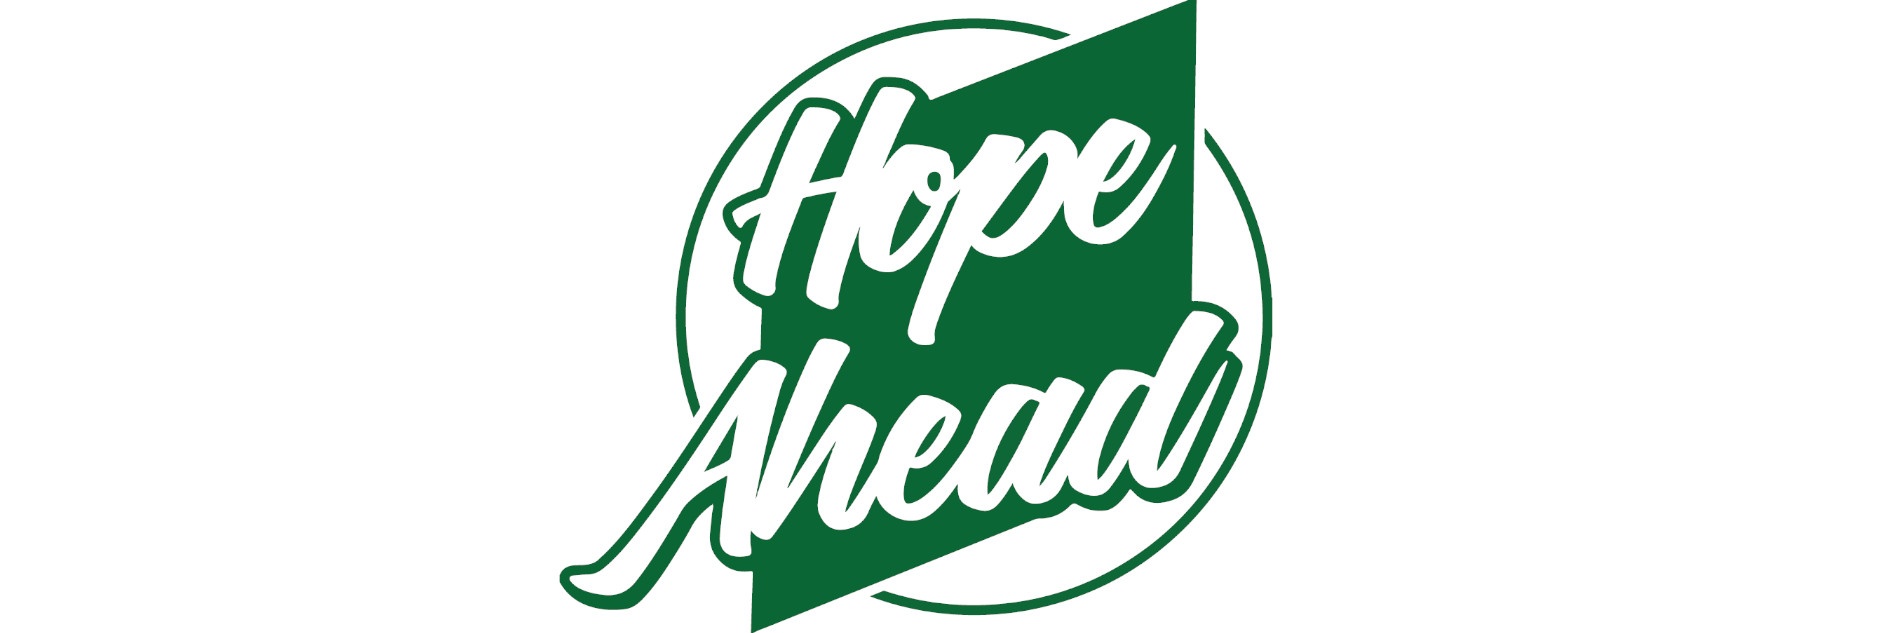 "Hope Ahead"-Schriftzug in einem Logo, das aus einem Kreis und einer Raute besteht.